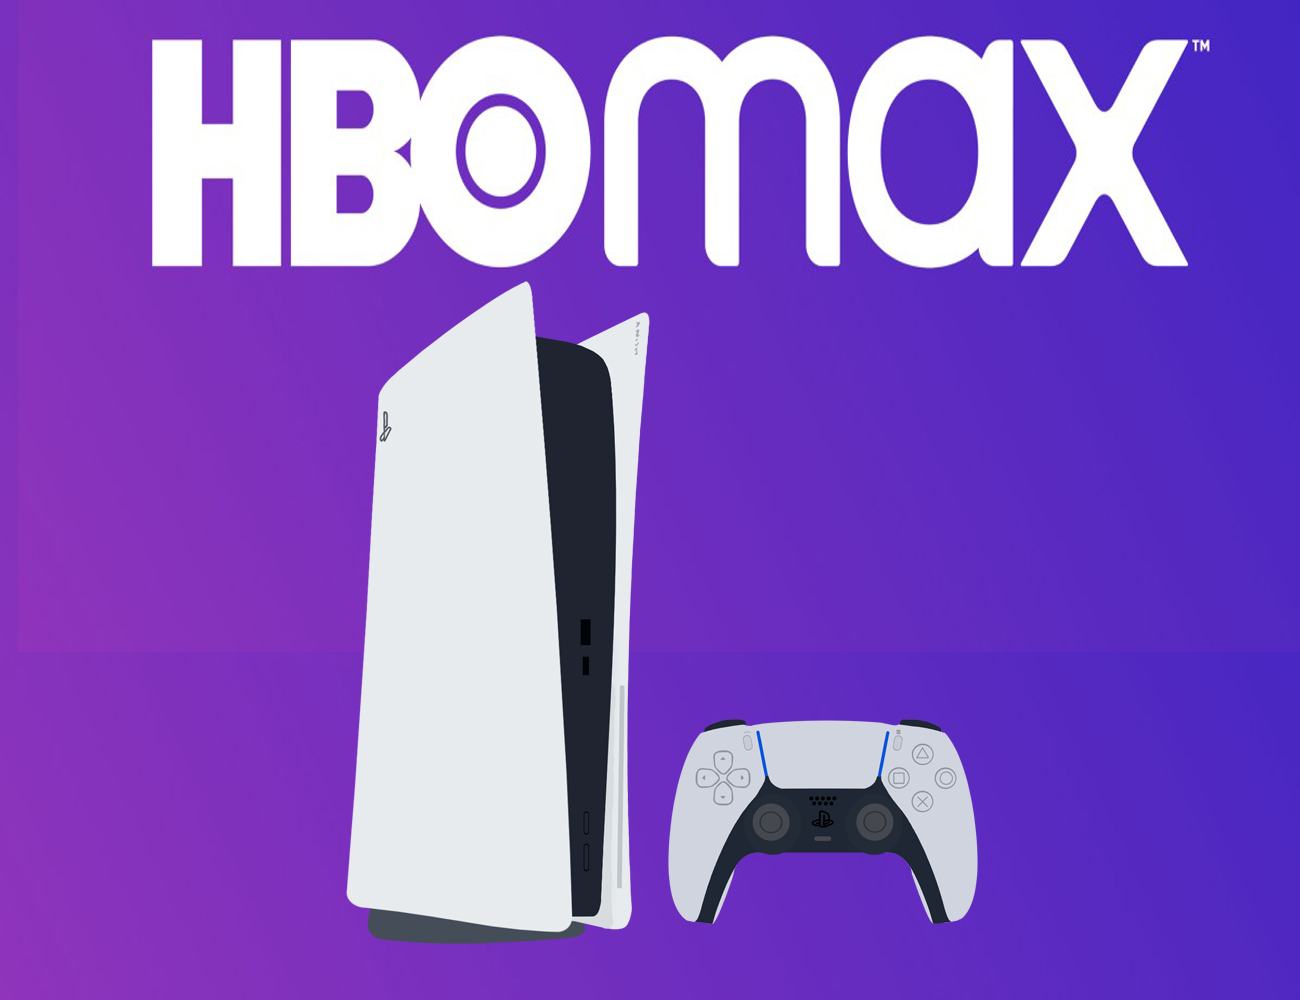 La app de HBO Max ya está disponible para usuarios de PlayStation